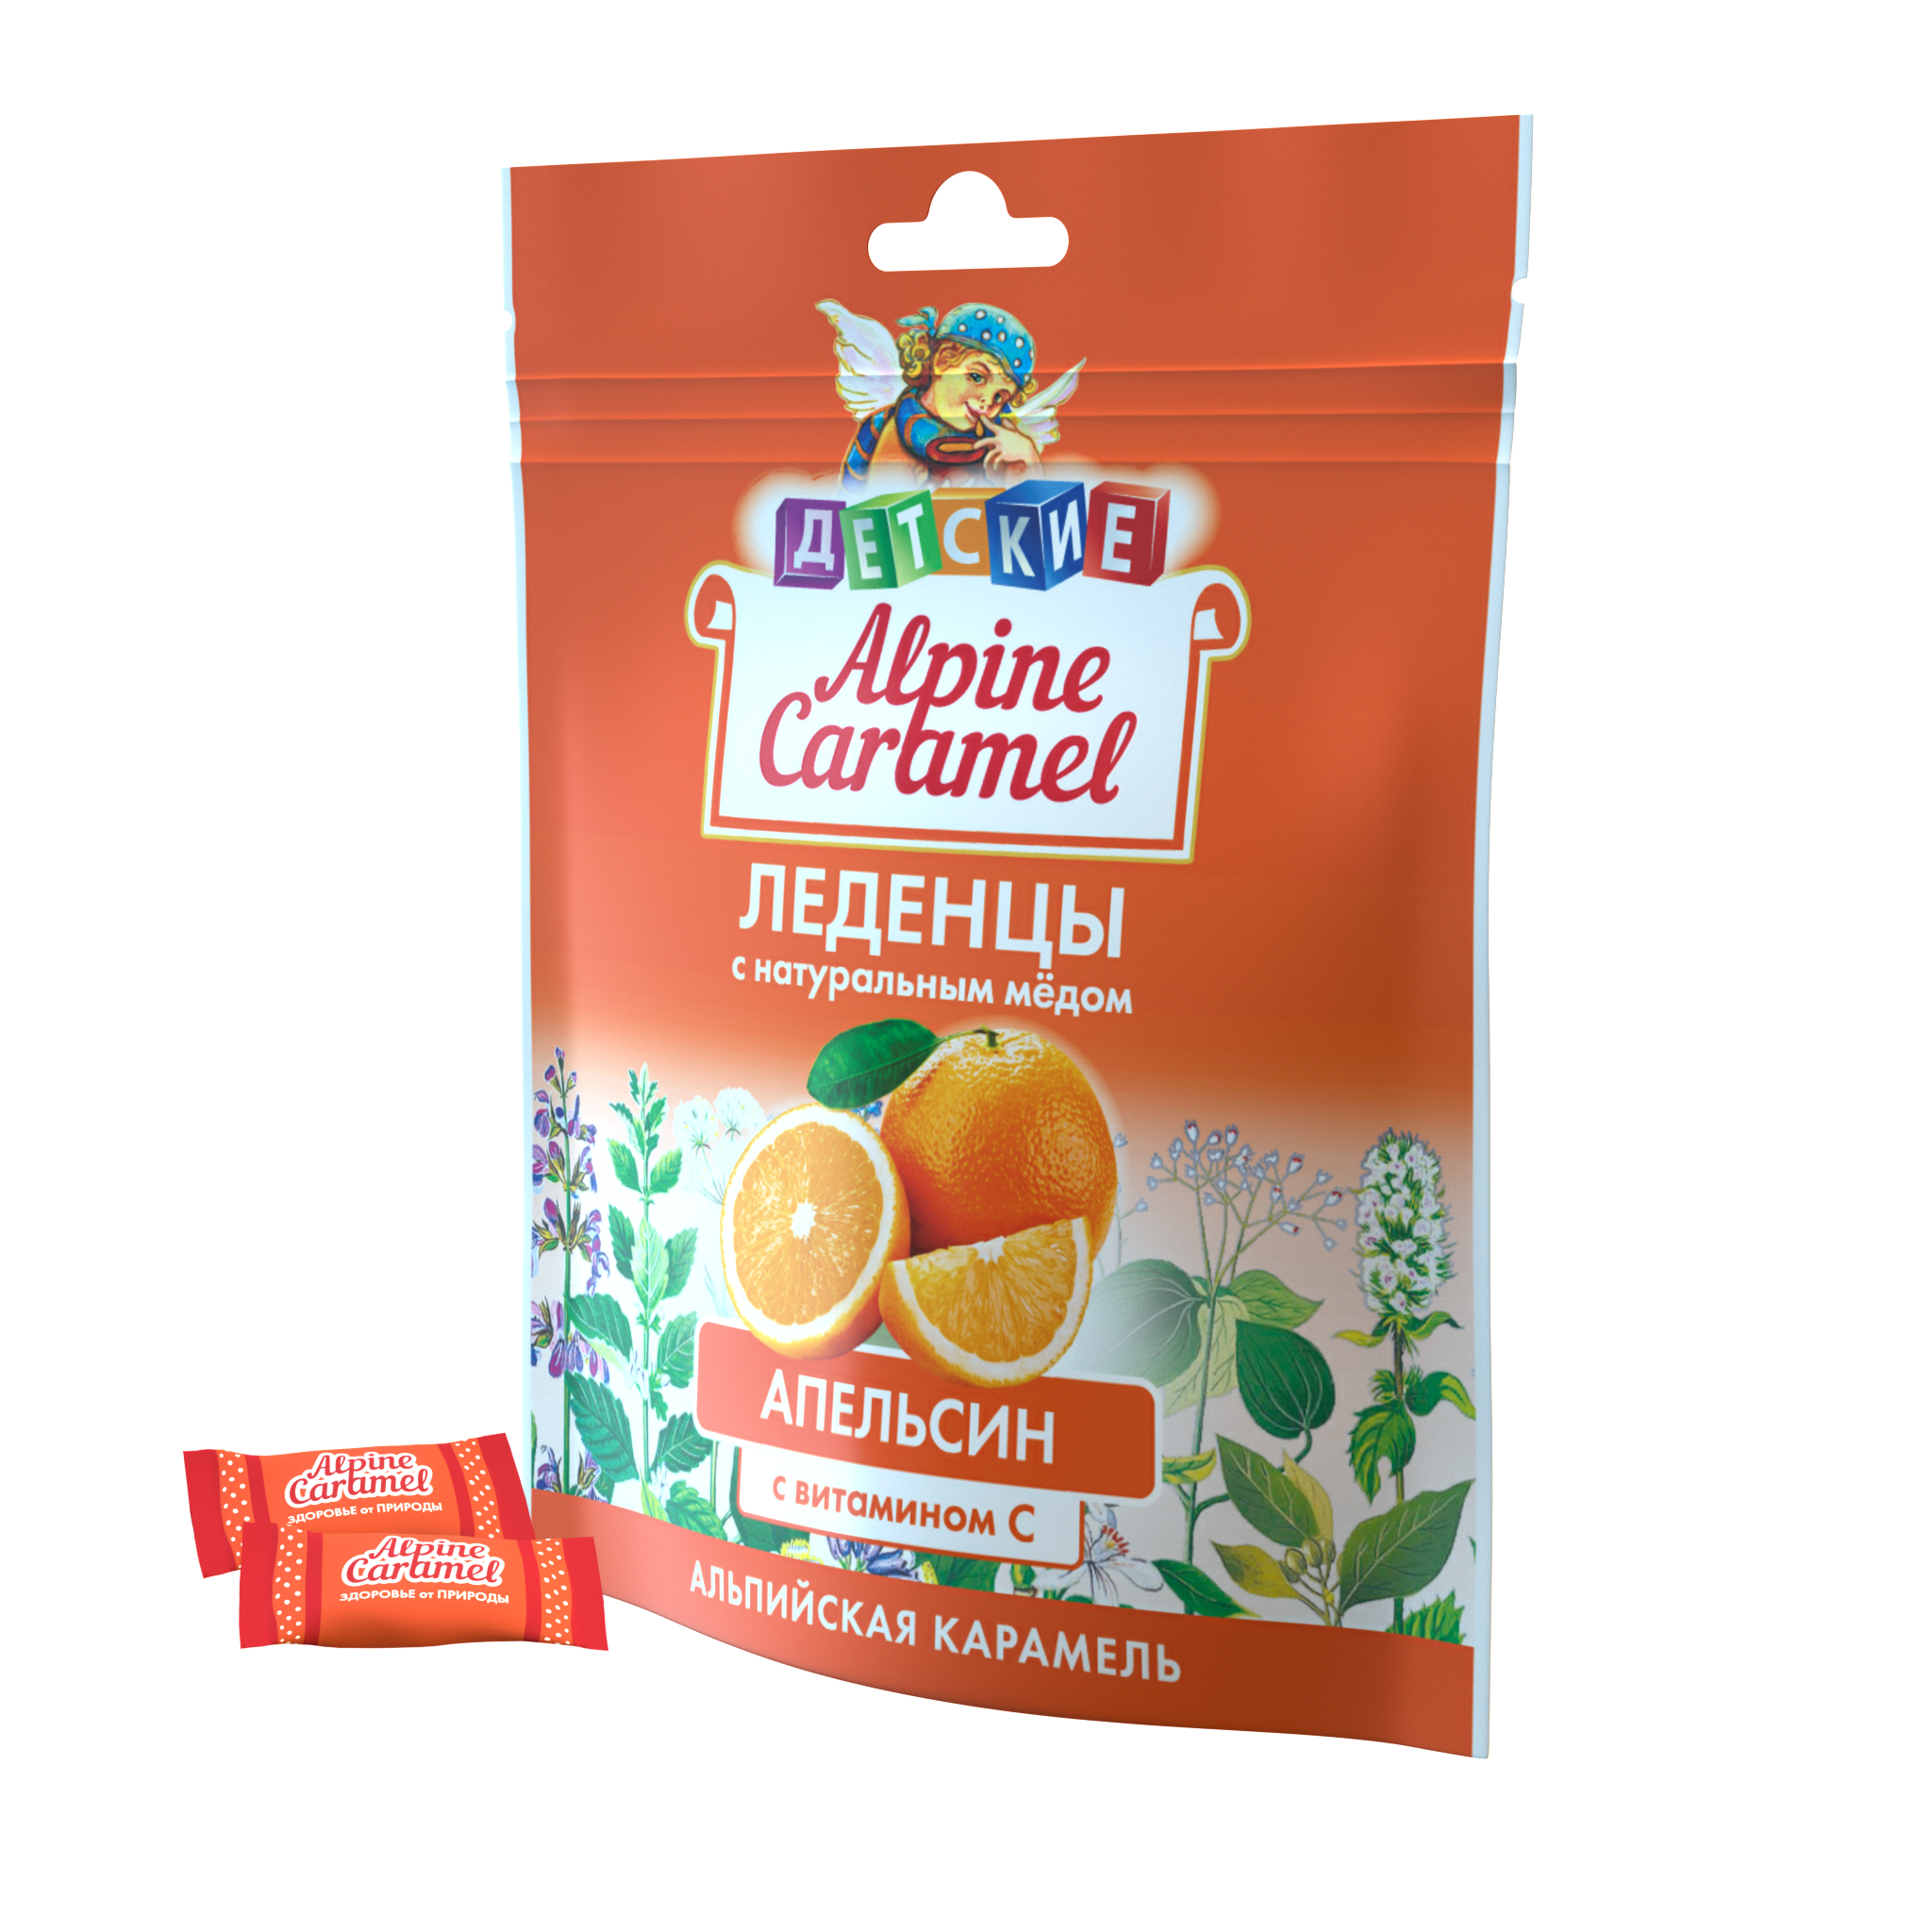 Alpine Caramel Альпийская Карамель леденцы дет (апельсин с медом и витамином С), 75 г